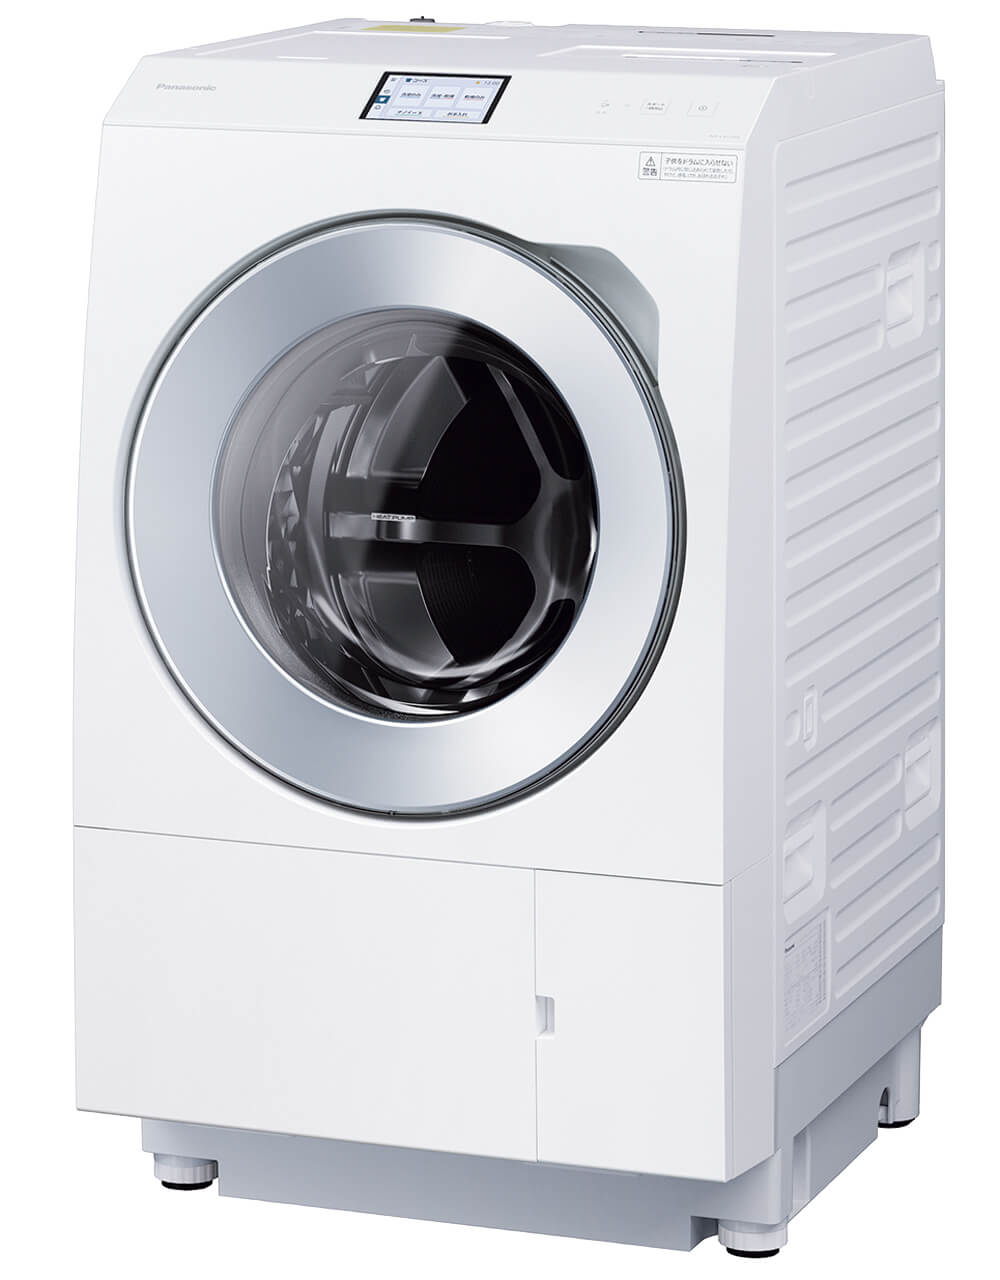 パナソニック ななめドラム洗濯乾燥機 NA-LX129A